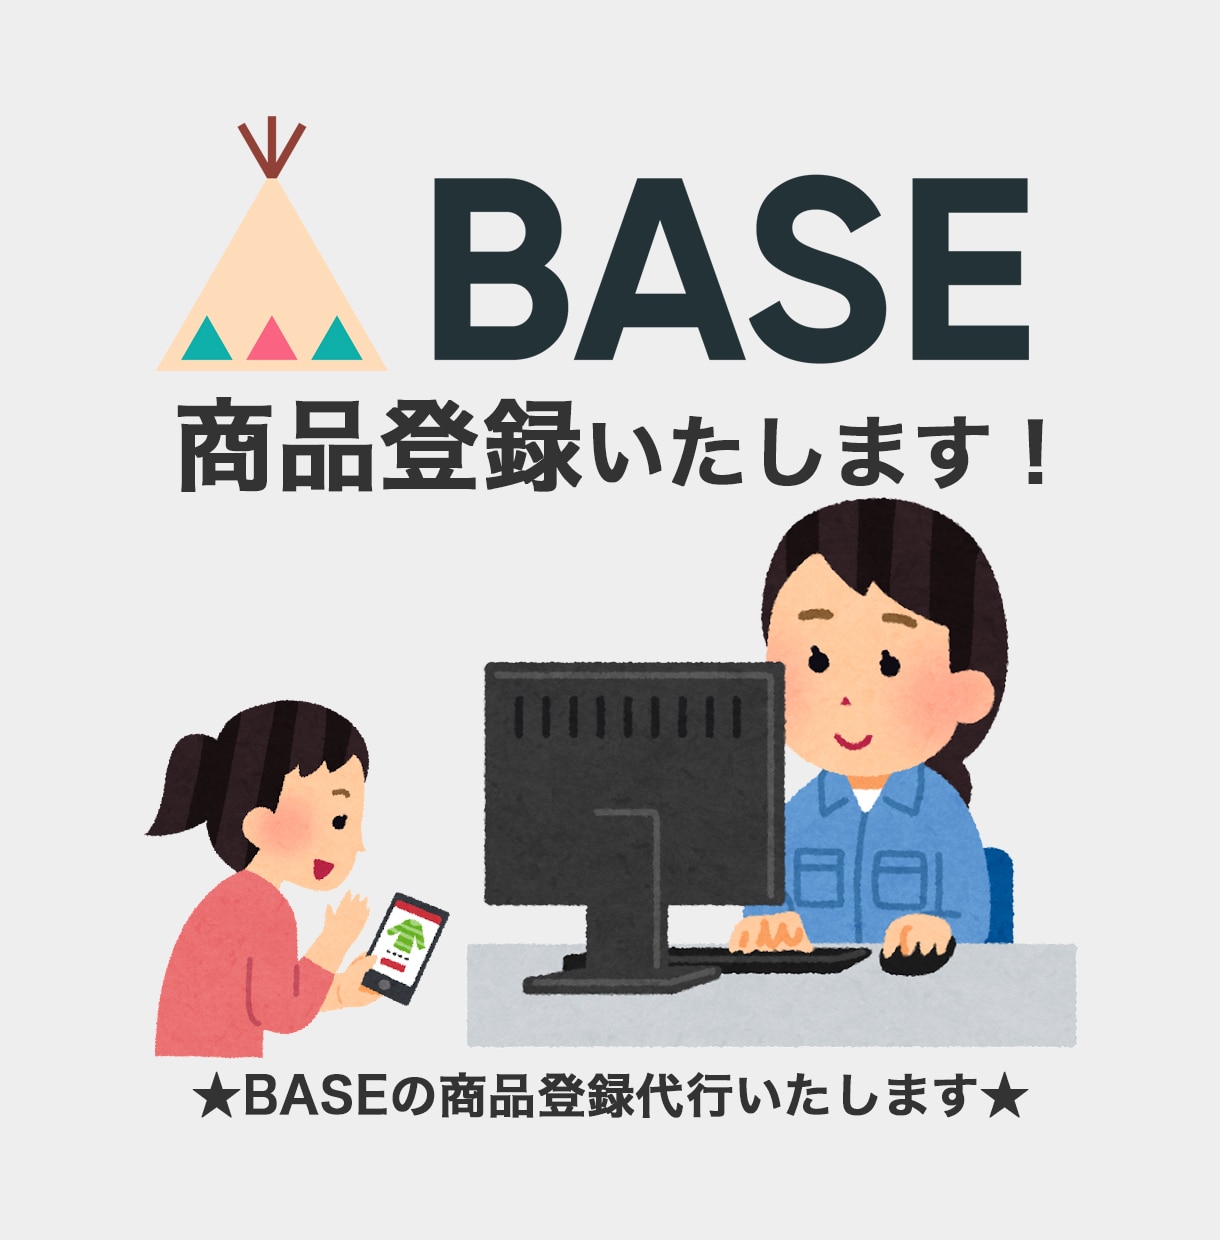 BASEの商品登録いたします 画像加工のオプションも御座います。 イメージ1